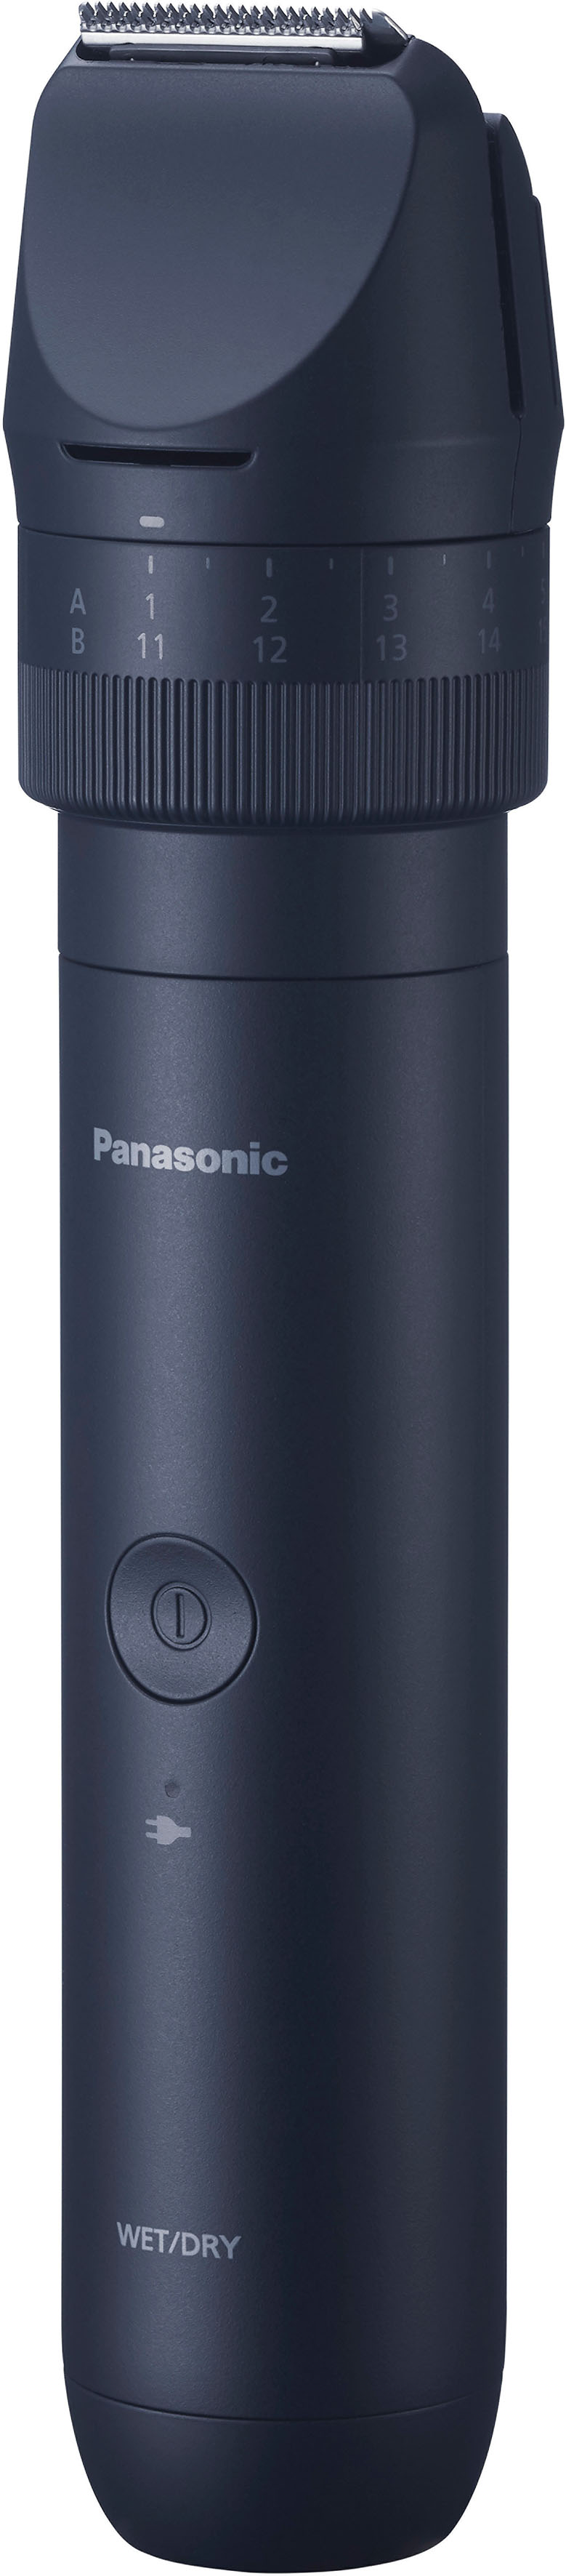 Panasonic Haar- und »Multishape 2 (NiMH-Akku) Starter Bartschneider Bart Online Aufsätze Kit Shop OTTO im Haare & ER-CKN1-A301«